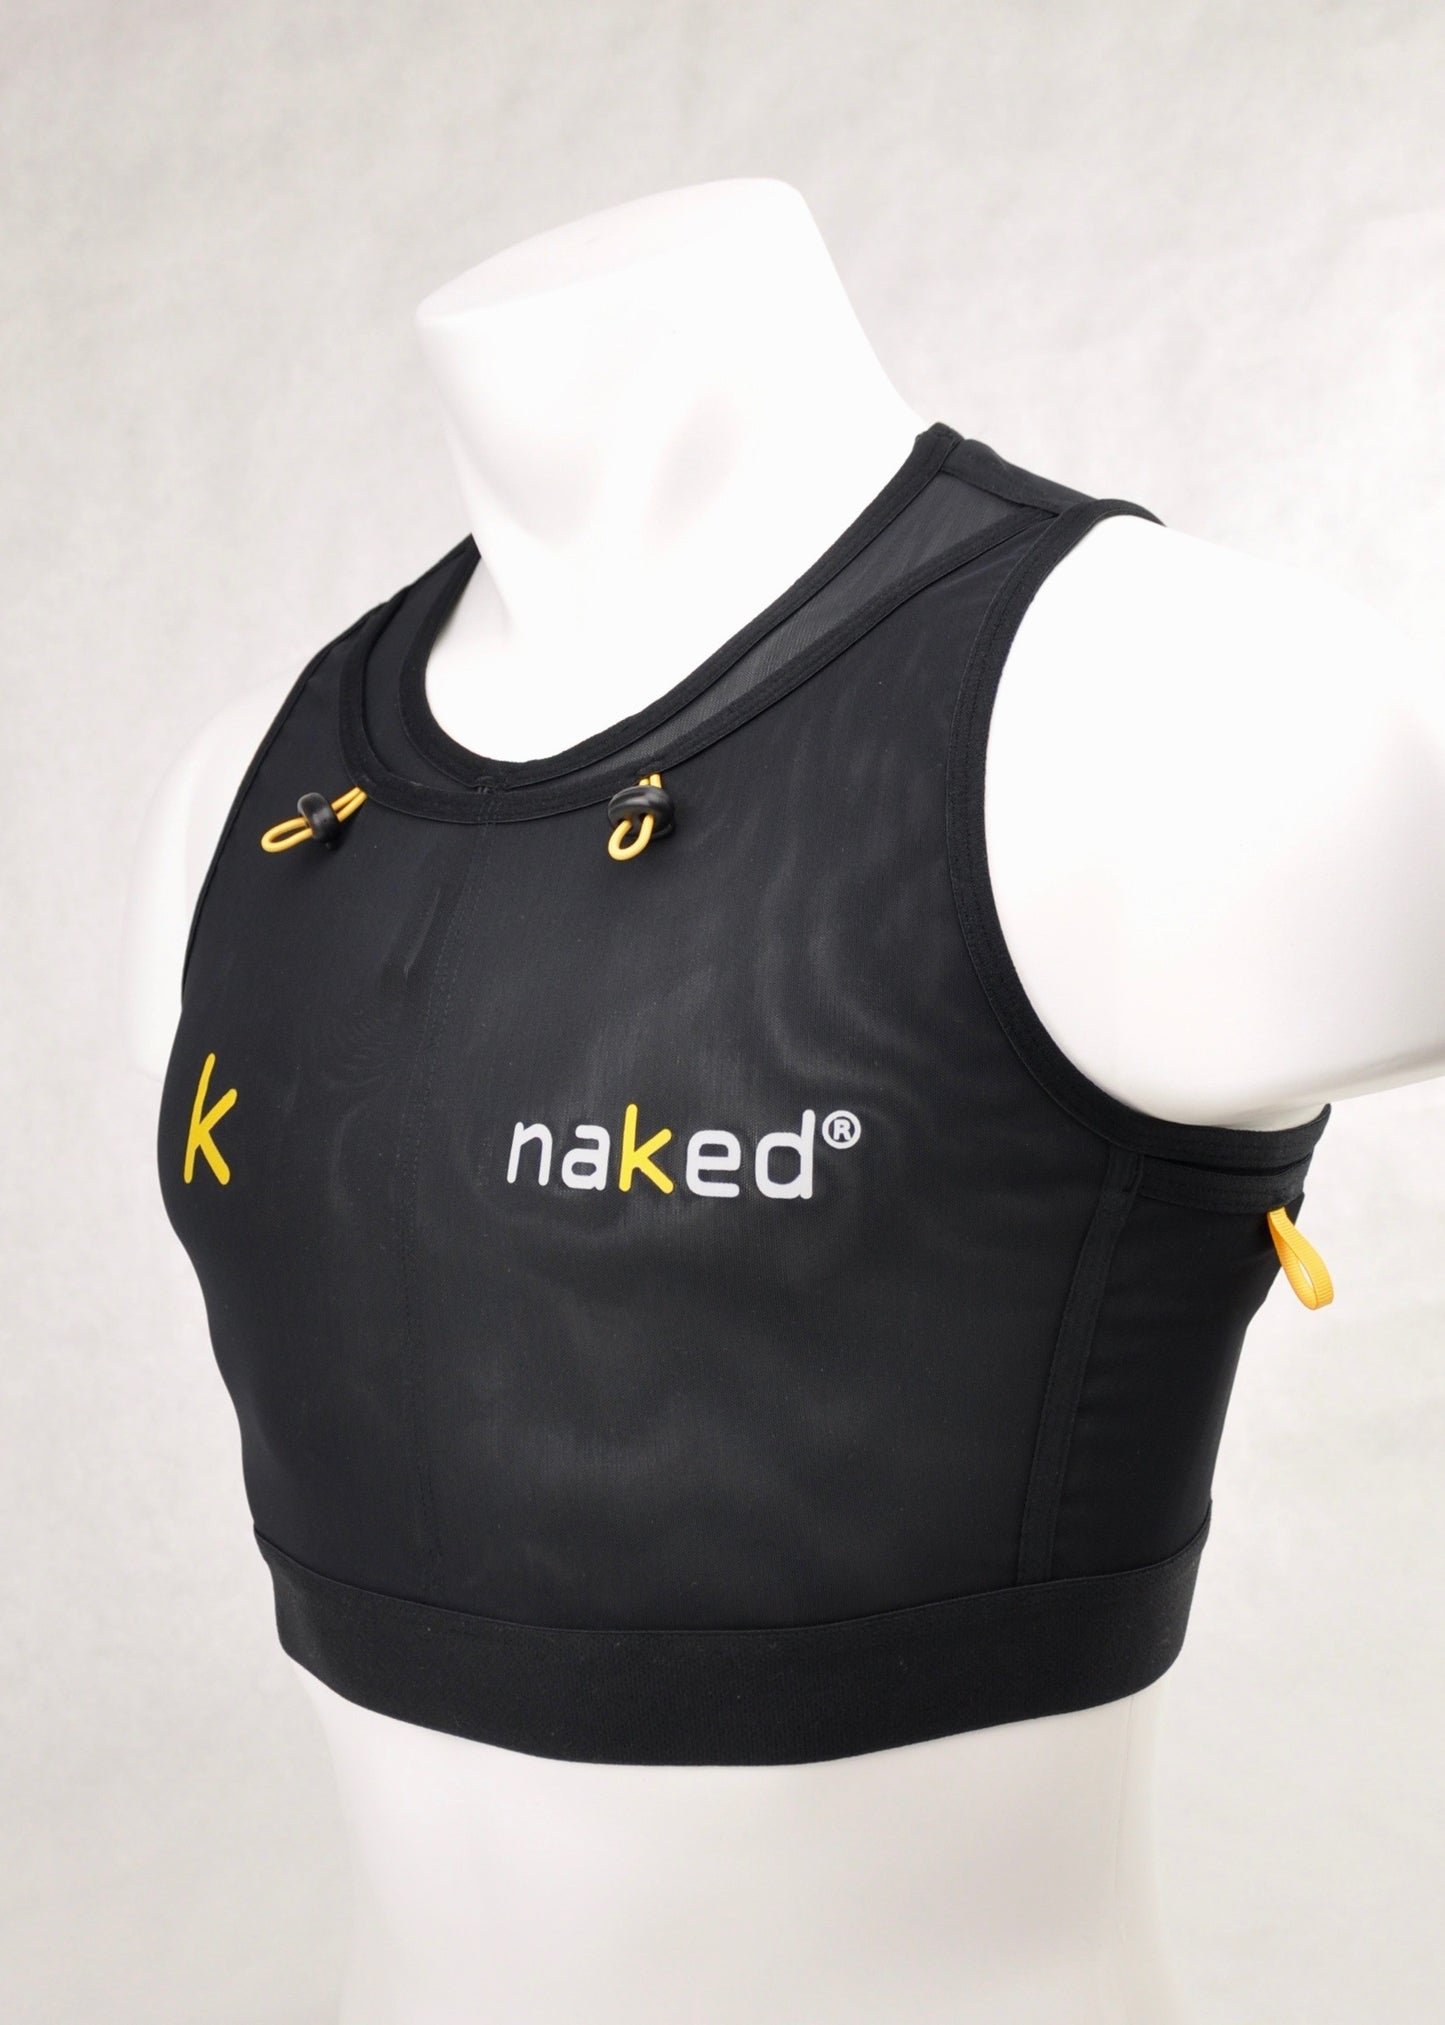 Naked - Running Vest - Men's